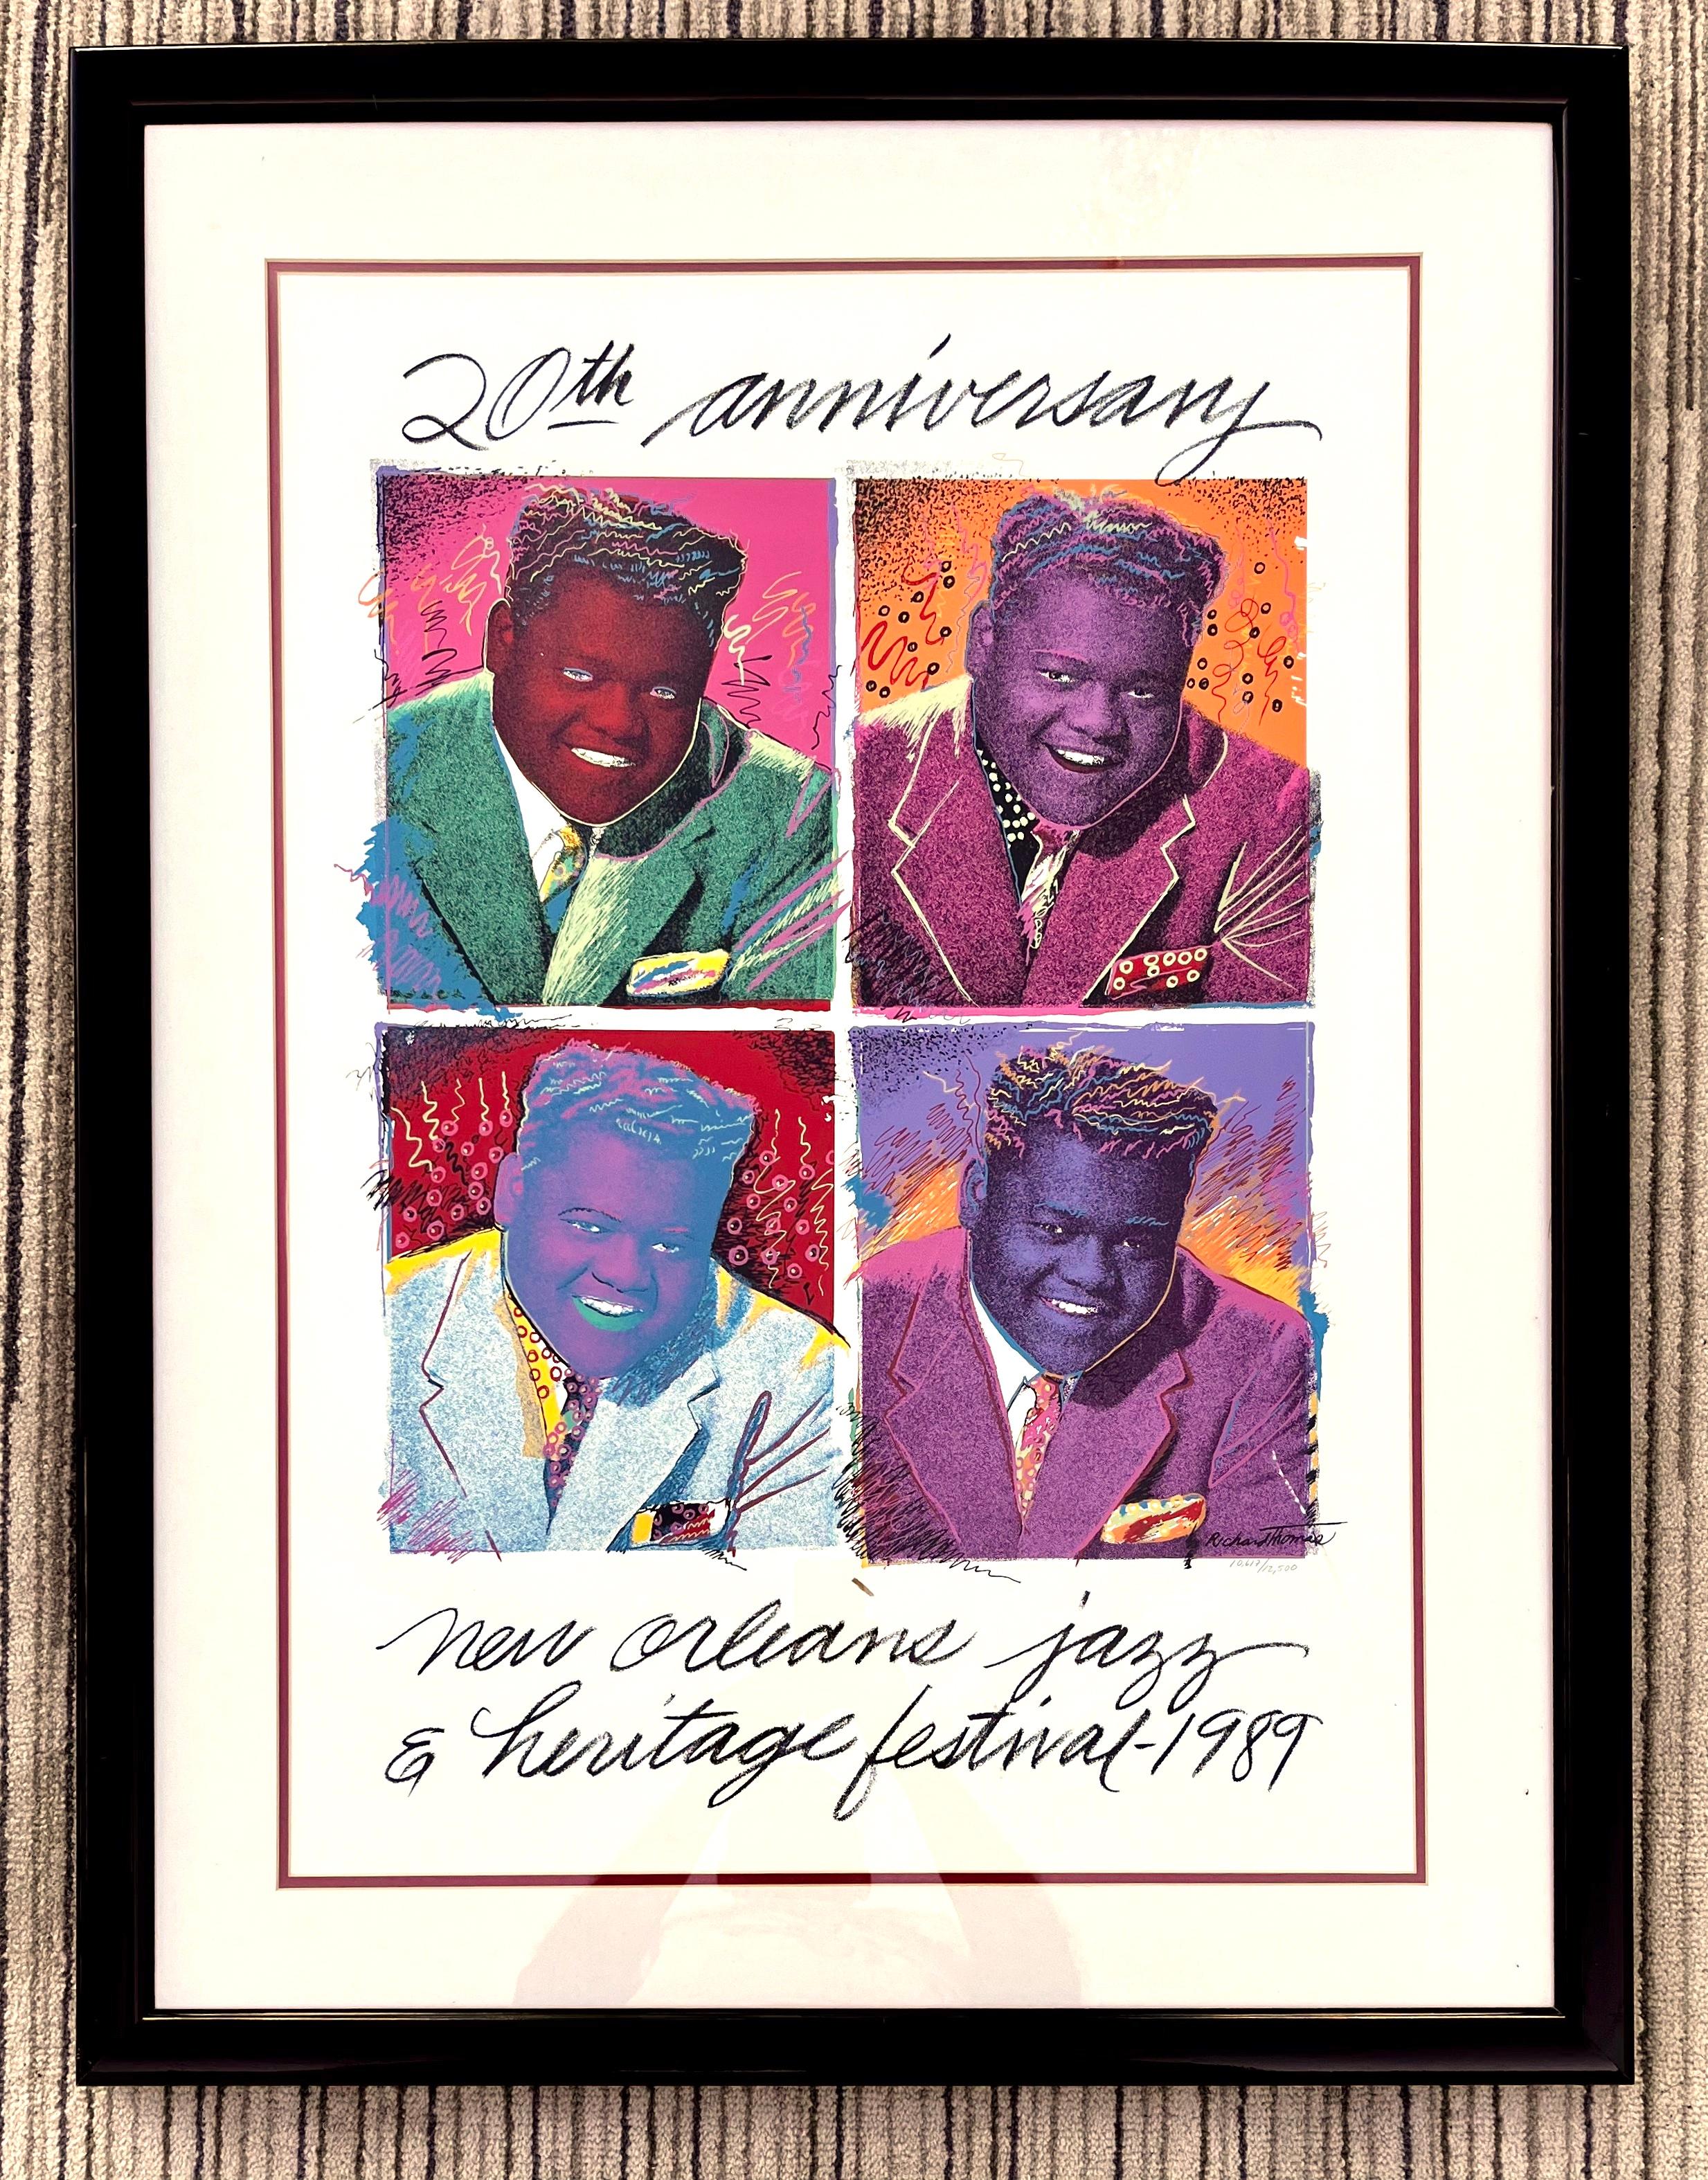 Vintage New Orleans 1989 Jazz Festival 20 Anniversary Fats Domino Original Poster by Richard Thomas  Numéroté et encadré. 
Quinzième de la série de Richard Thomas. Aussi important que les affiches de 76, 80 et 85, le portrait pop de Fats Domino